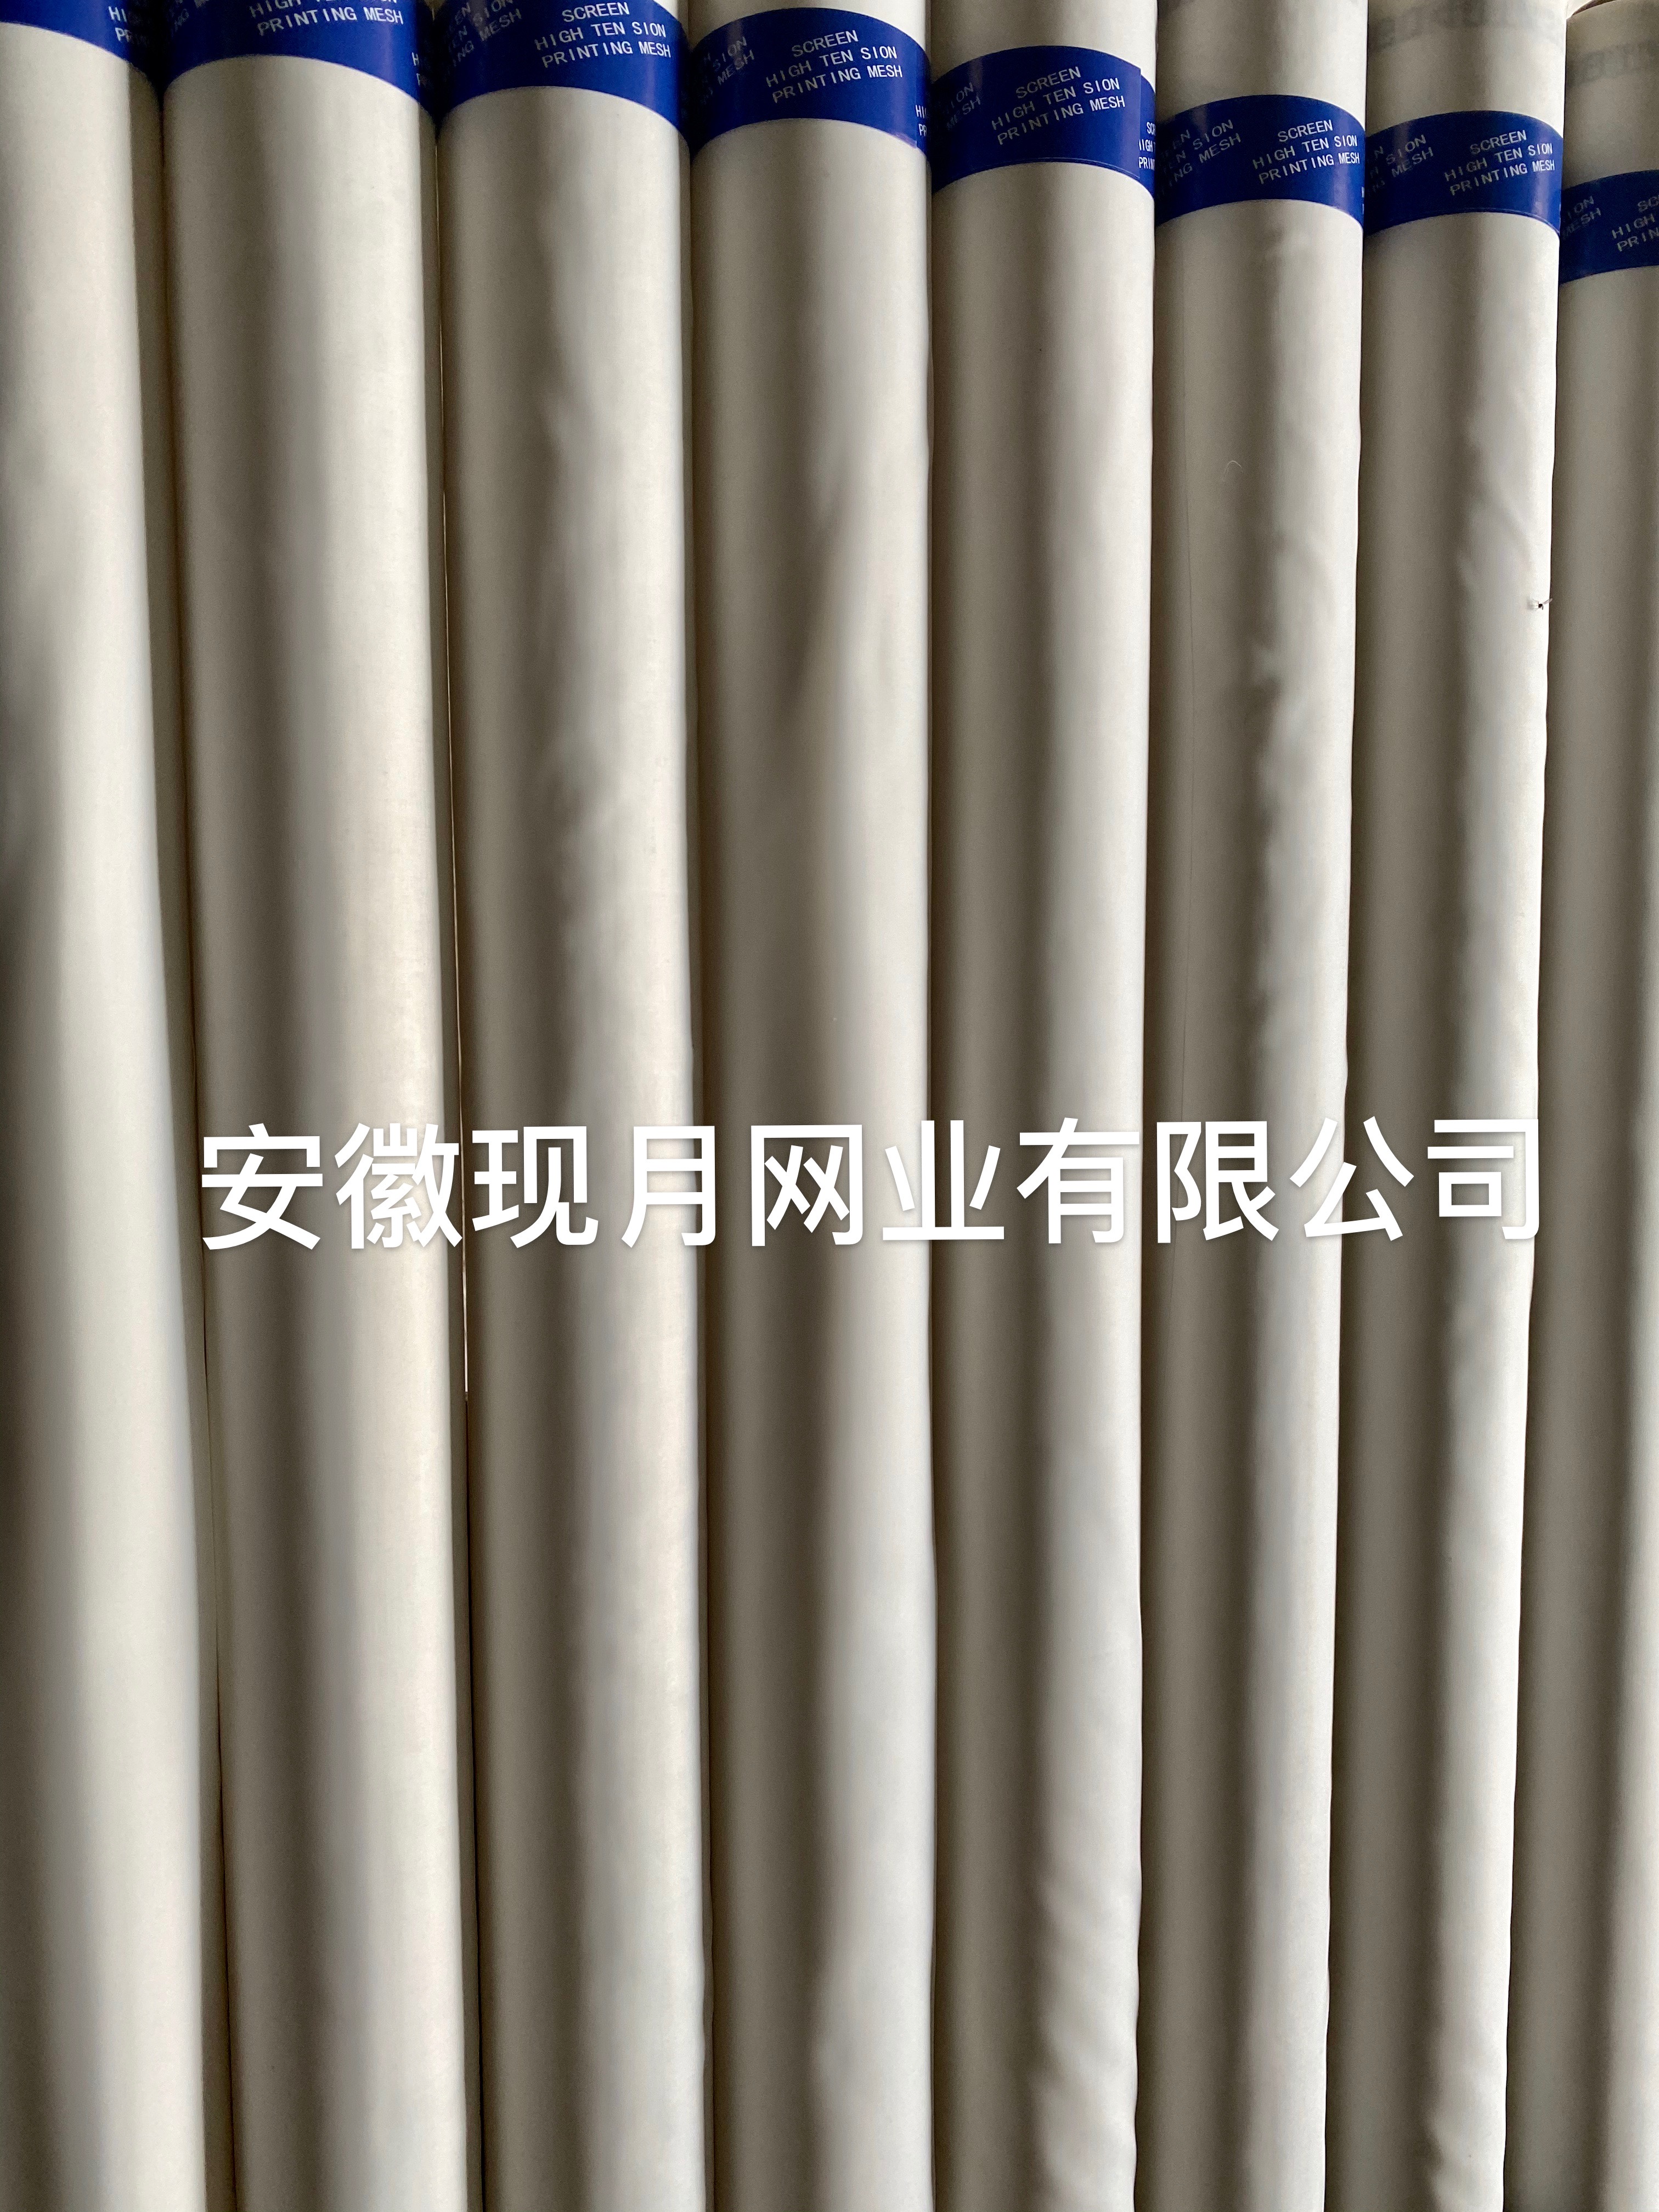 厂家直销供应批发优质涤纶丝印网纱59T150目玻璃容器印刷丝网